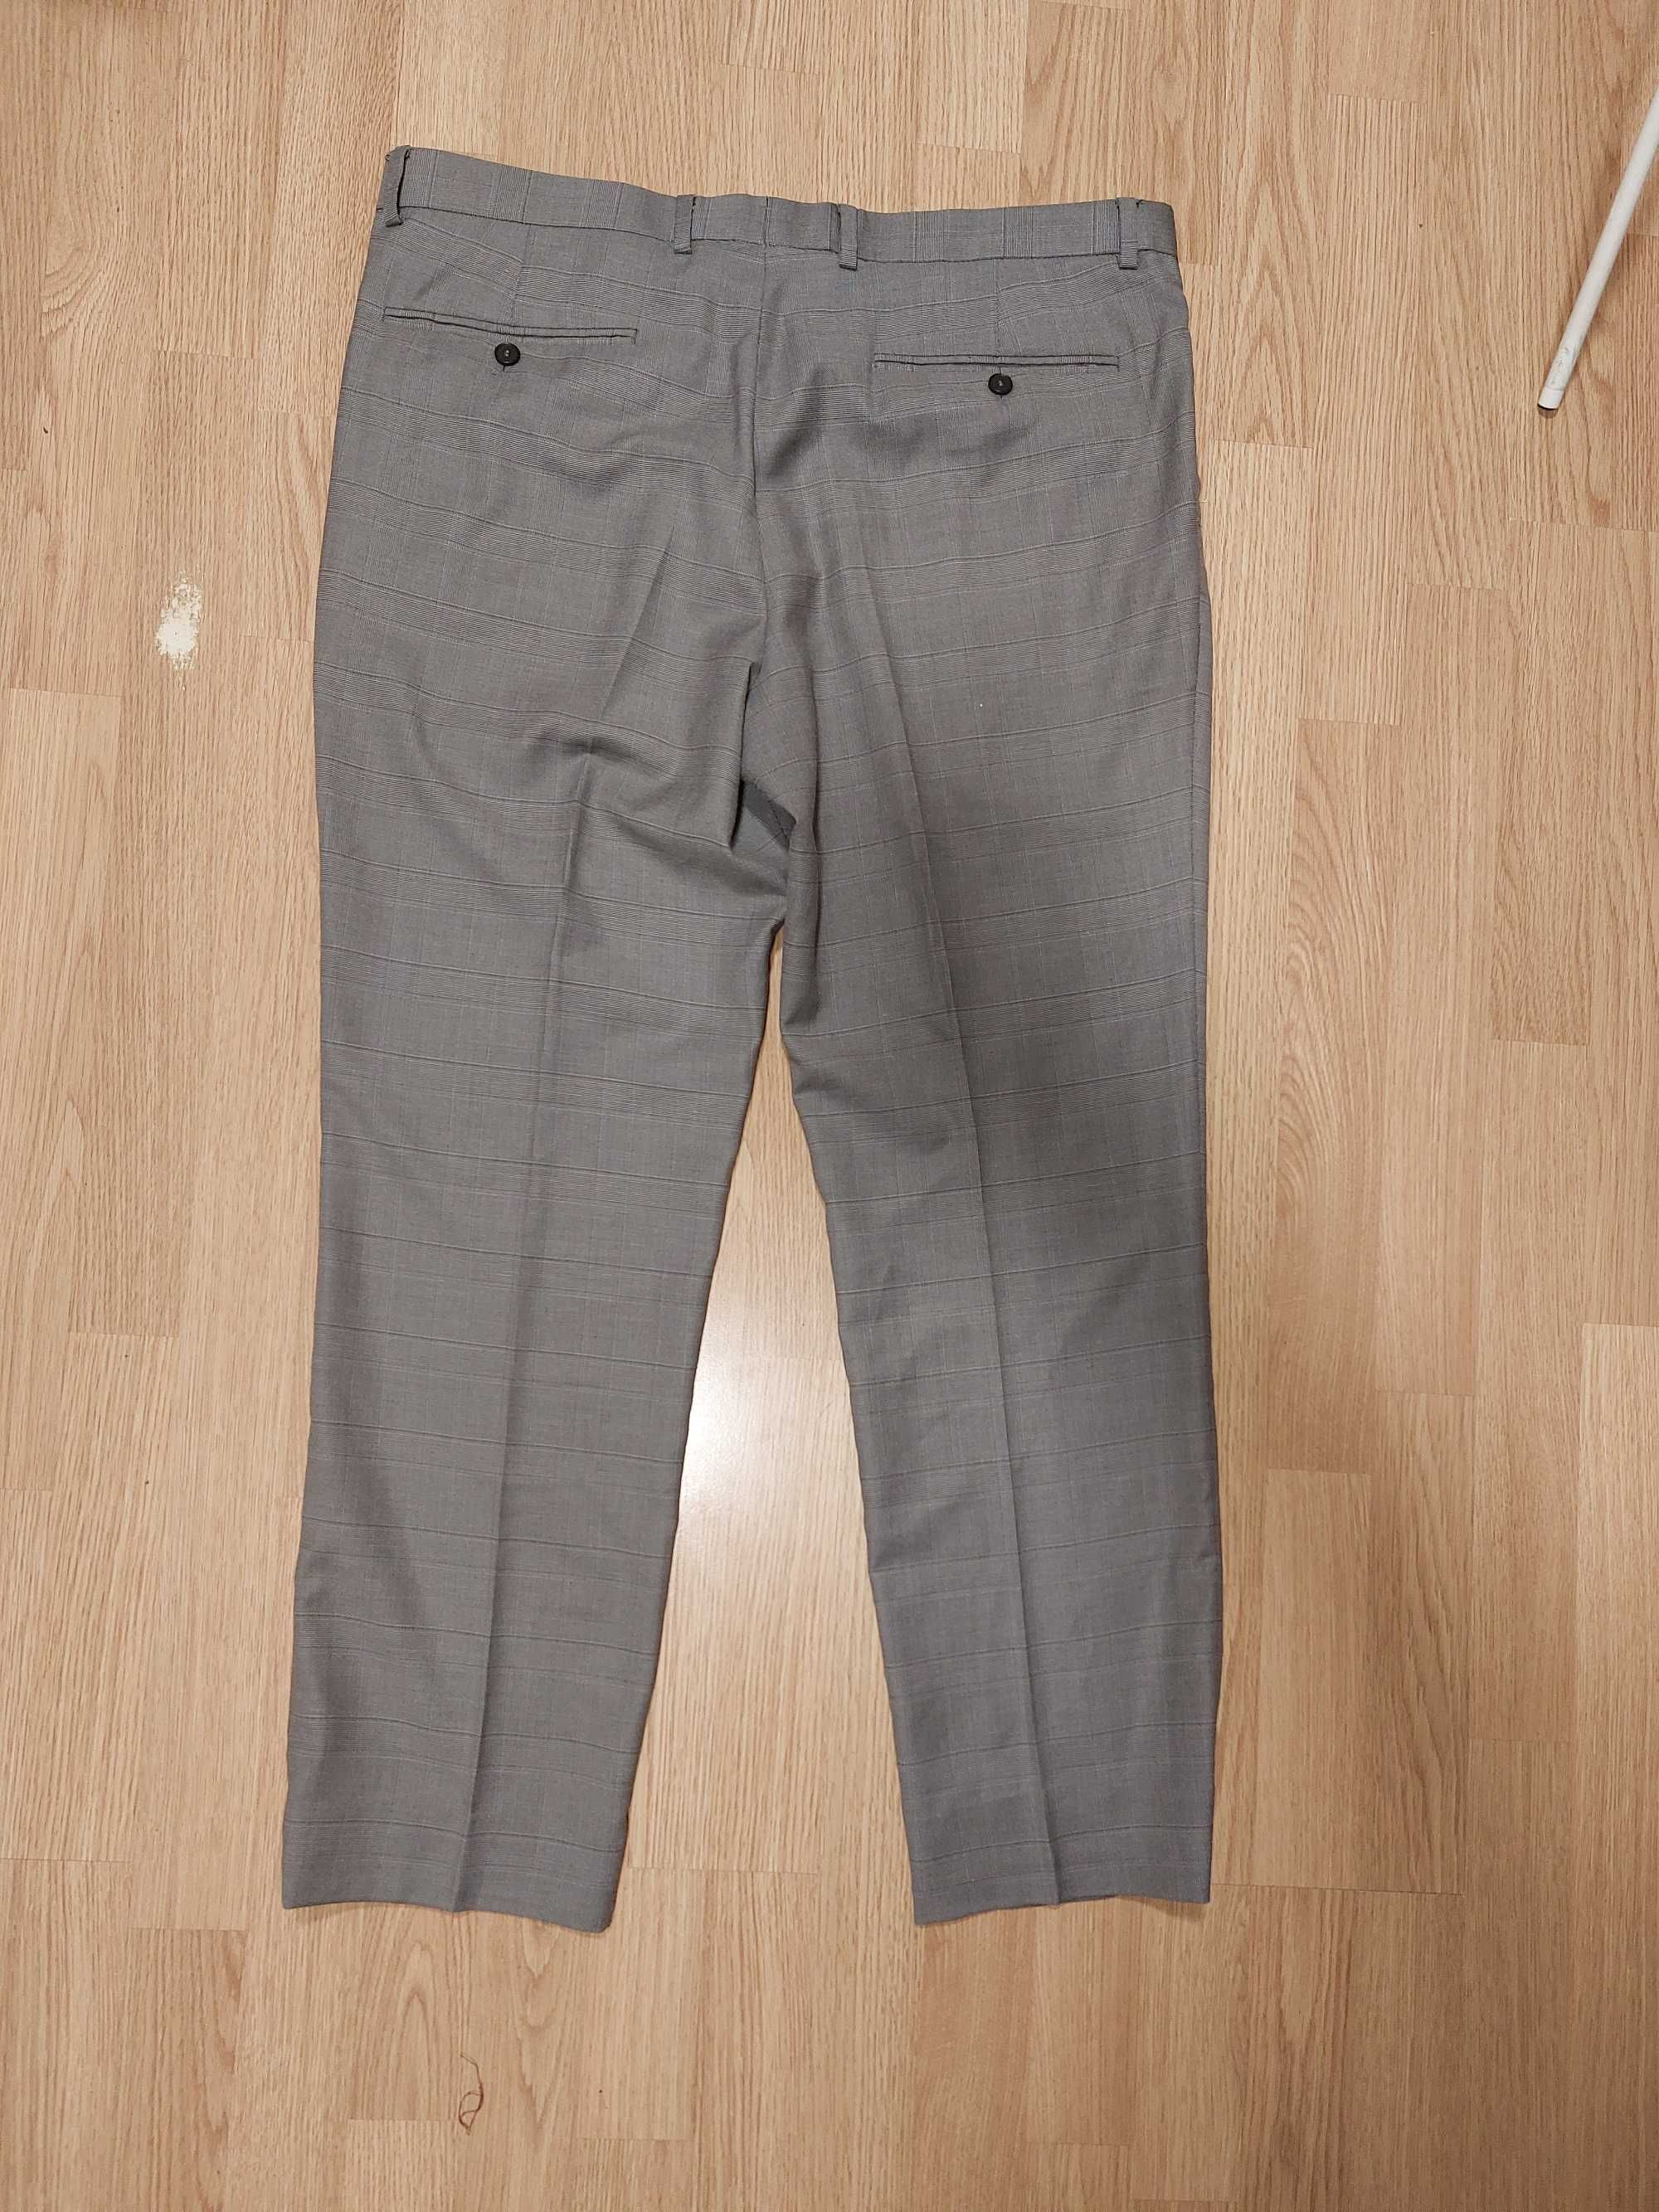 Spodnie Reserved klasyczne męskie szare w kratkę